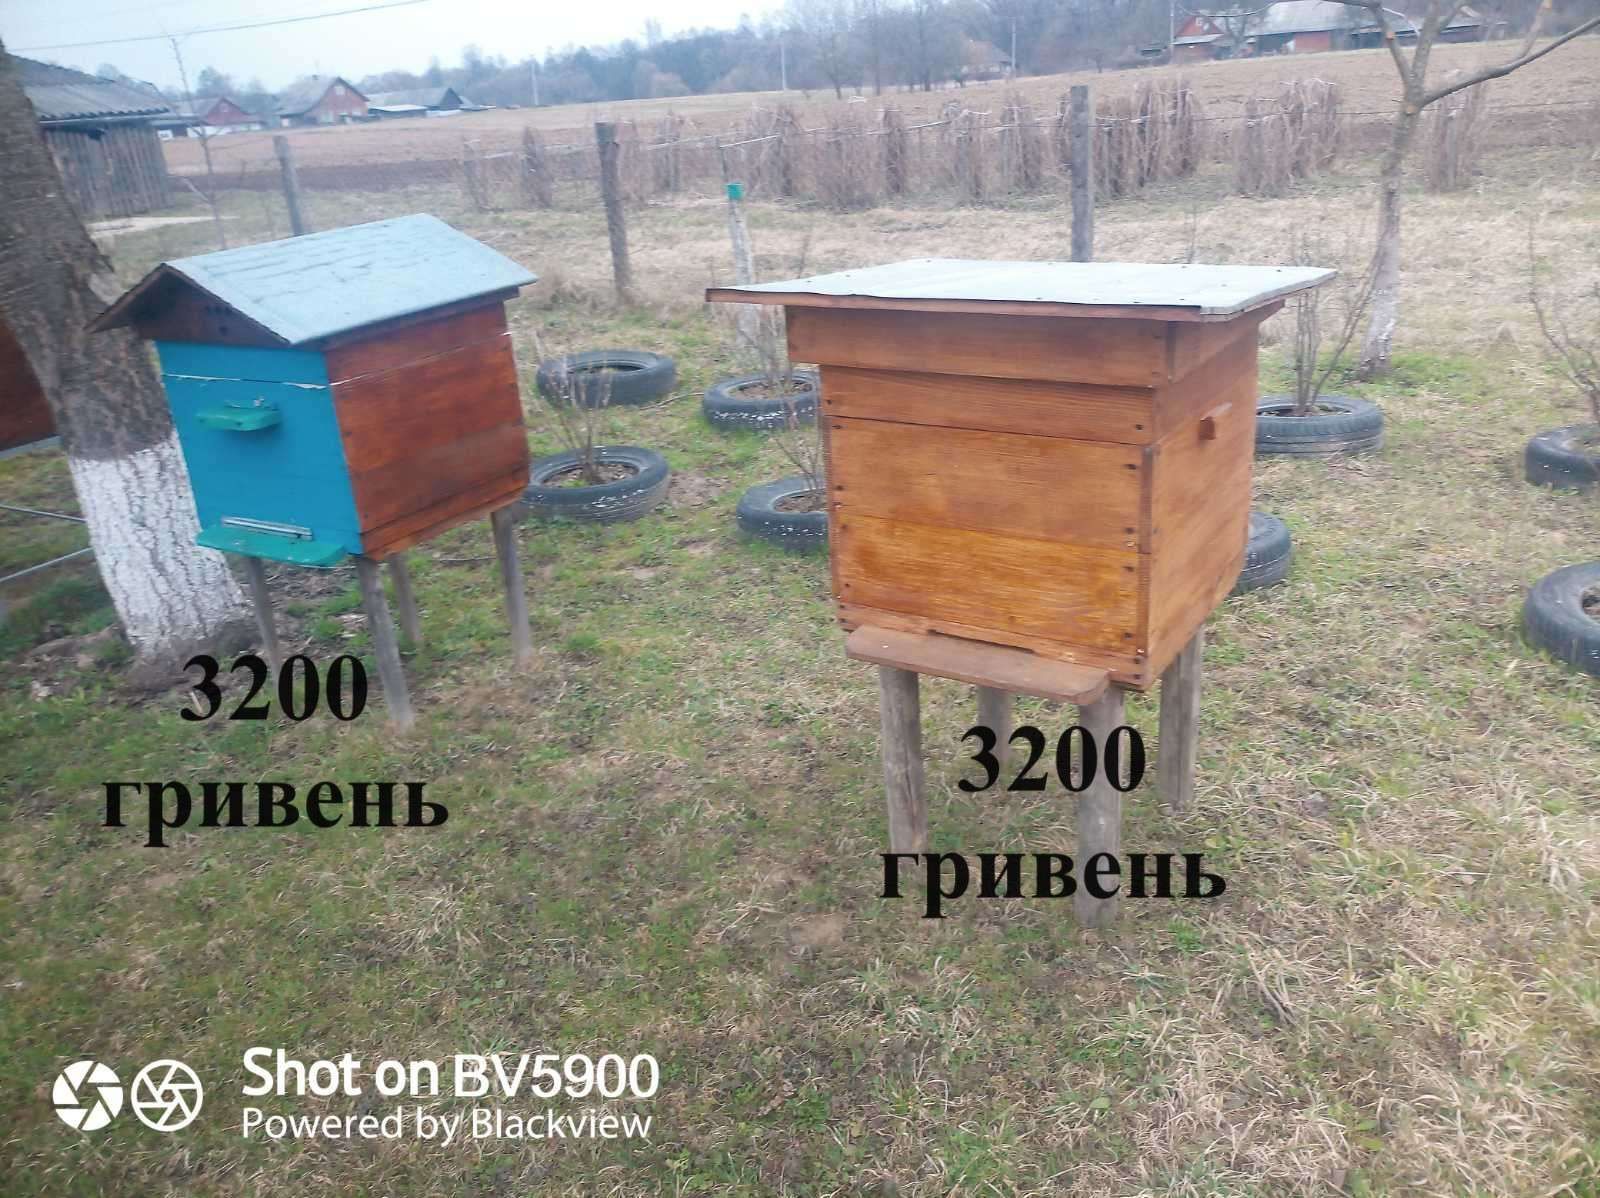 Продаються вулики разом із бджолами. Можливість продажу бджоло-пакетів